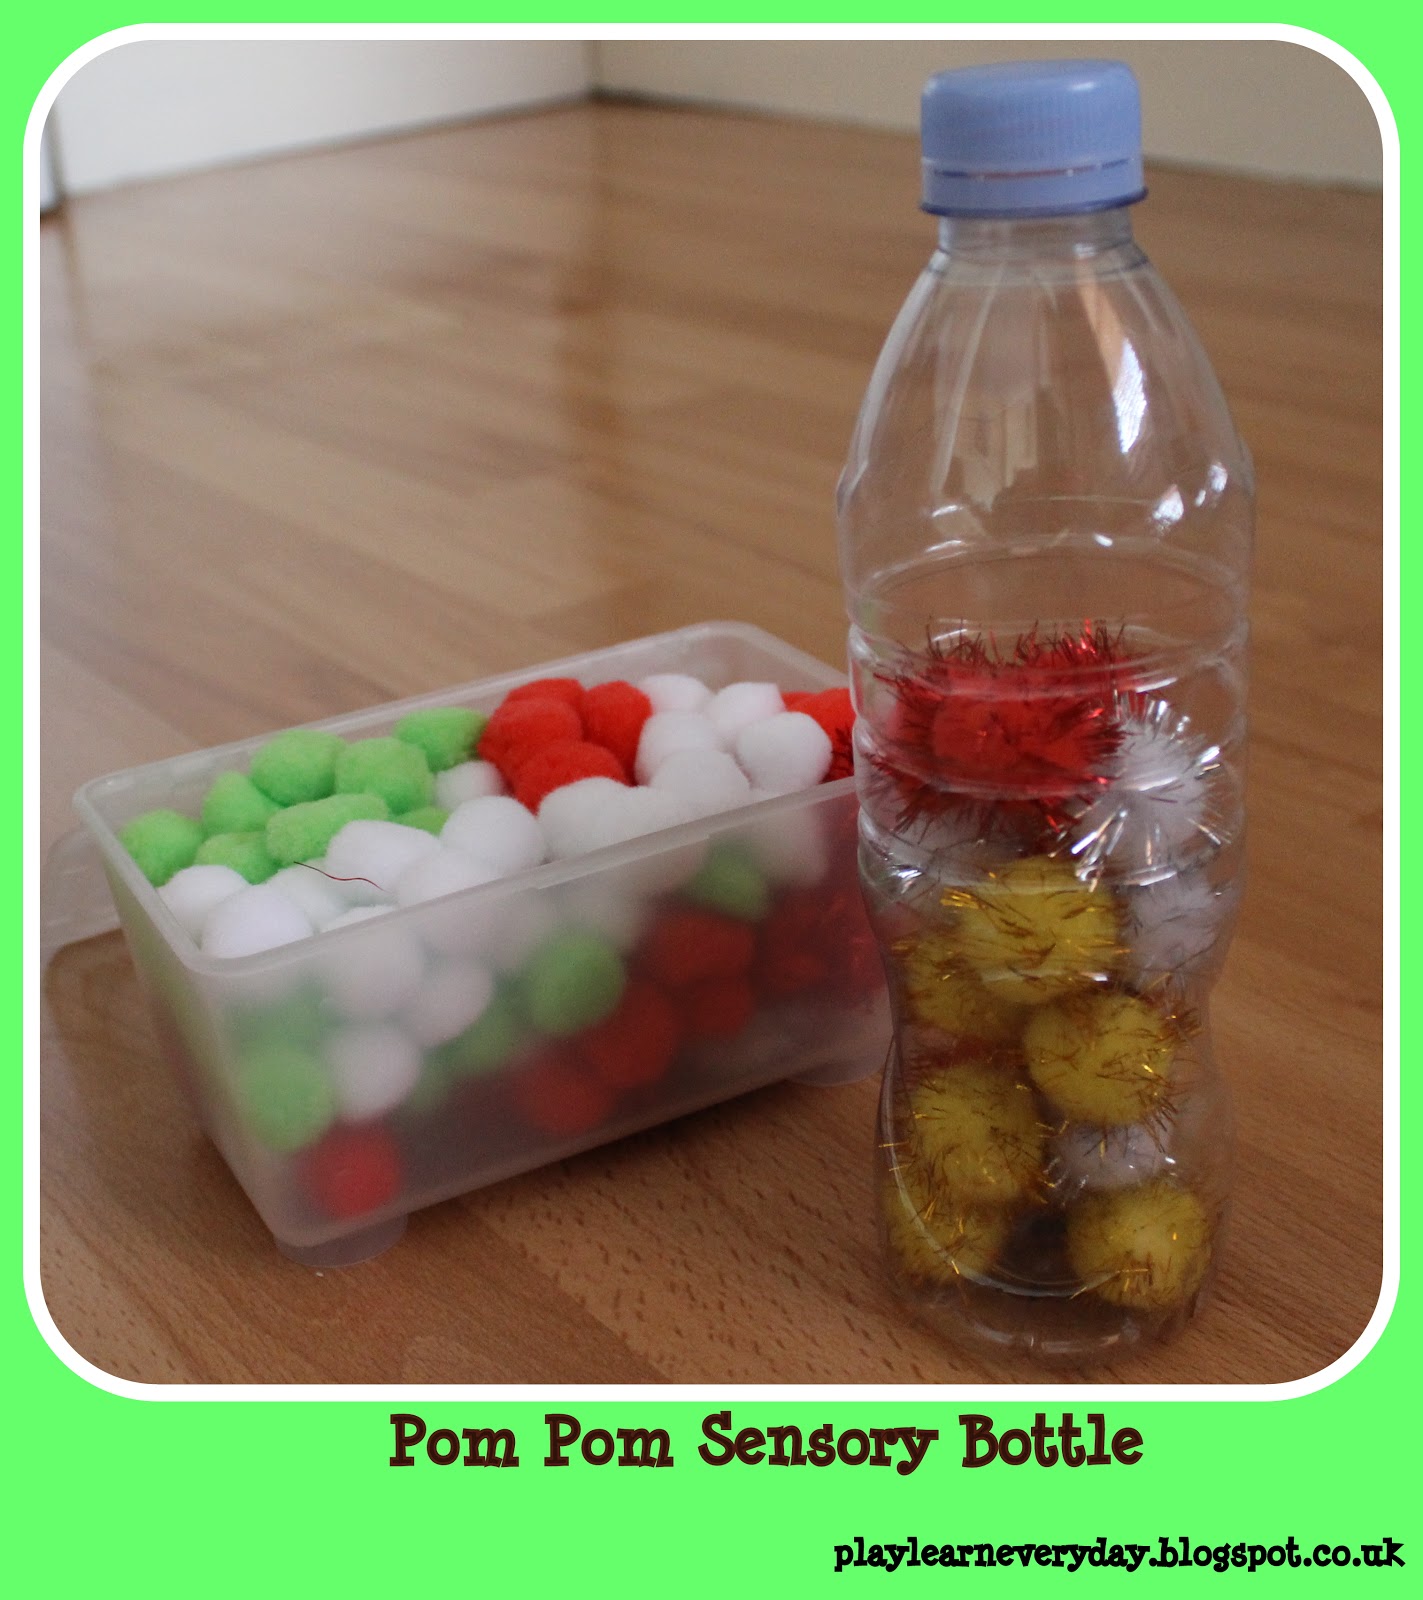 The Benefits of Sensory Bottles for Toddlers - Landstar